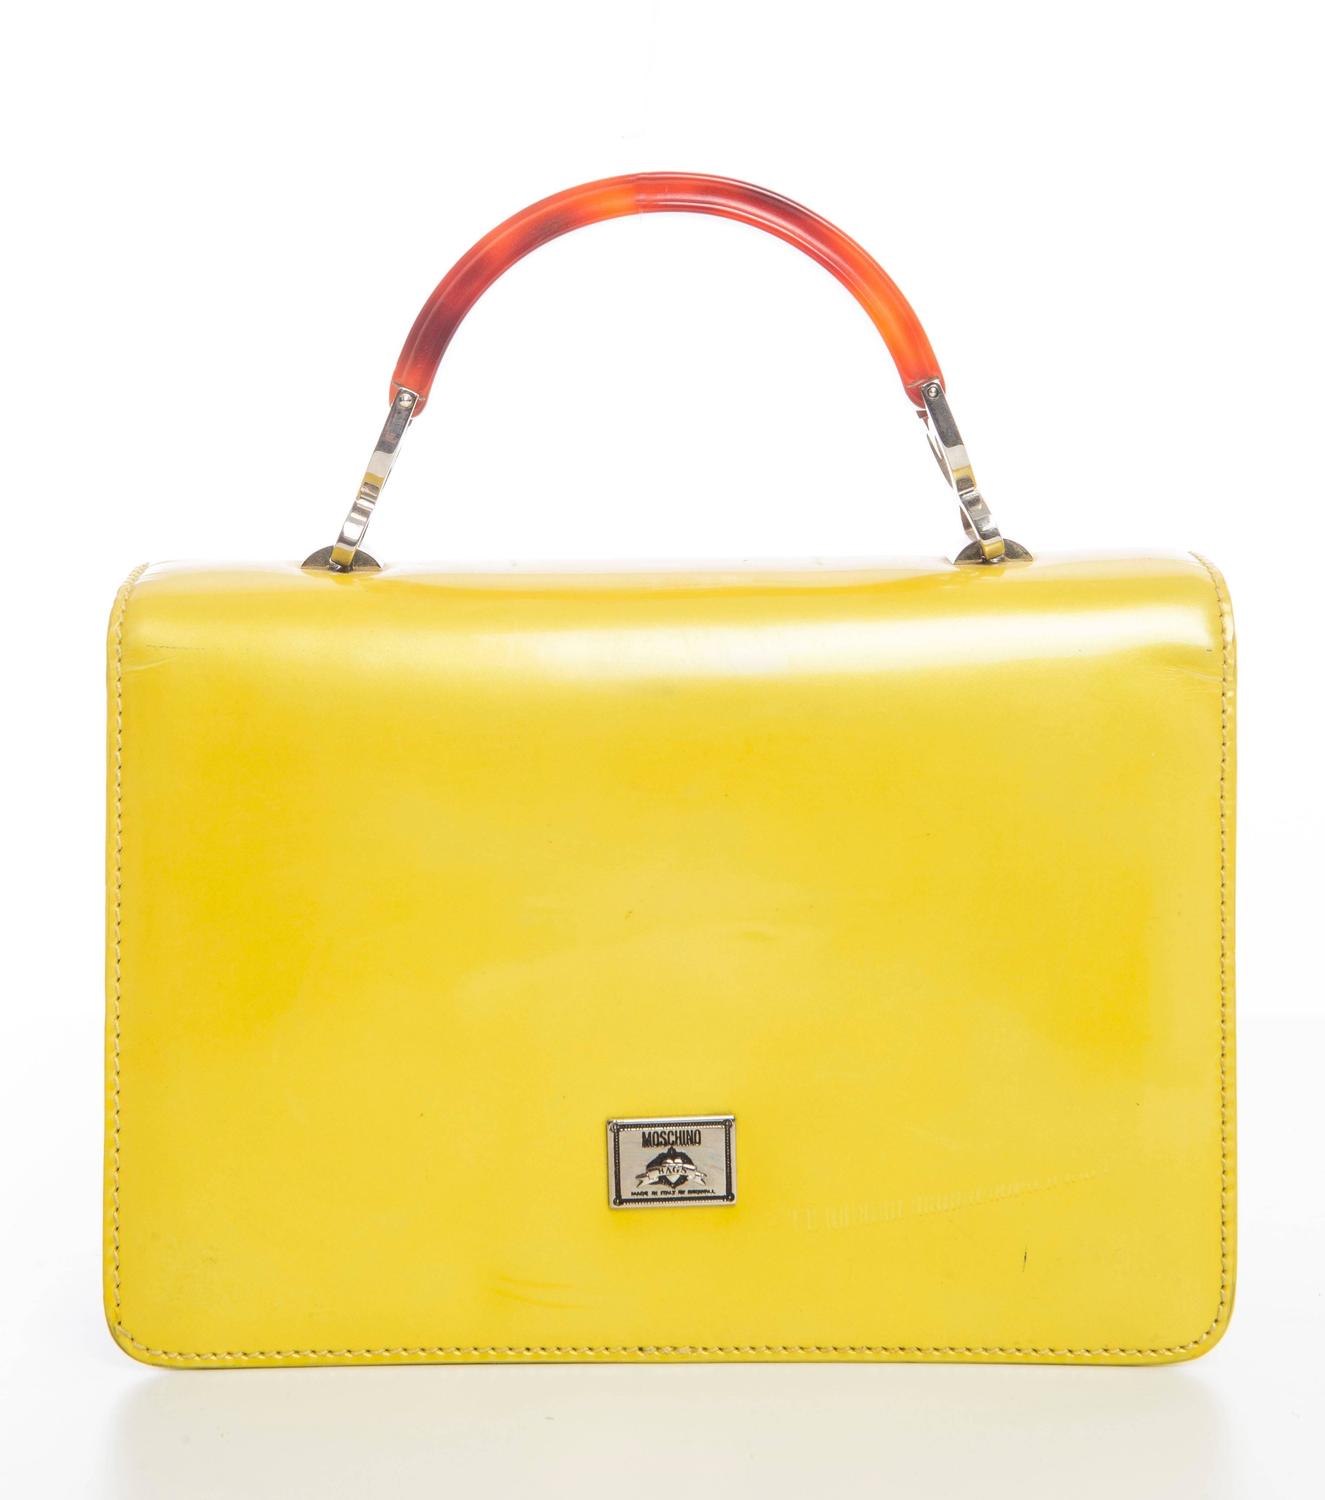 Moschino Yellow Leather Handbag, Circa 1990's at 1stdibs